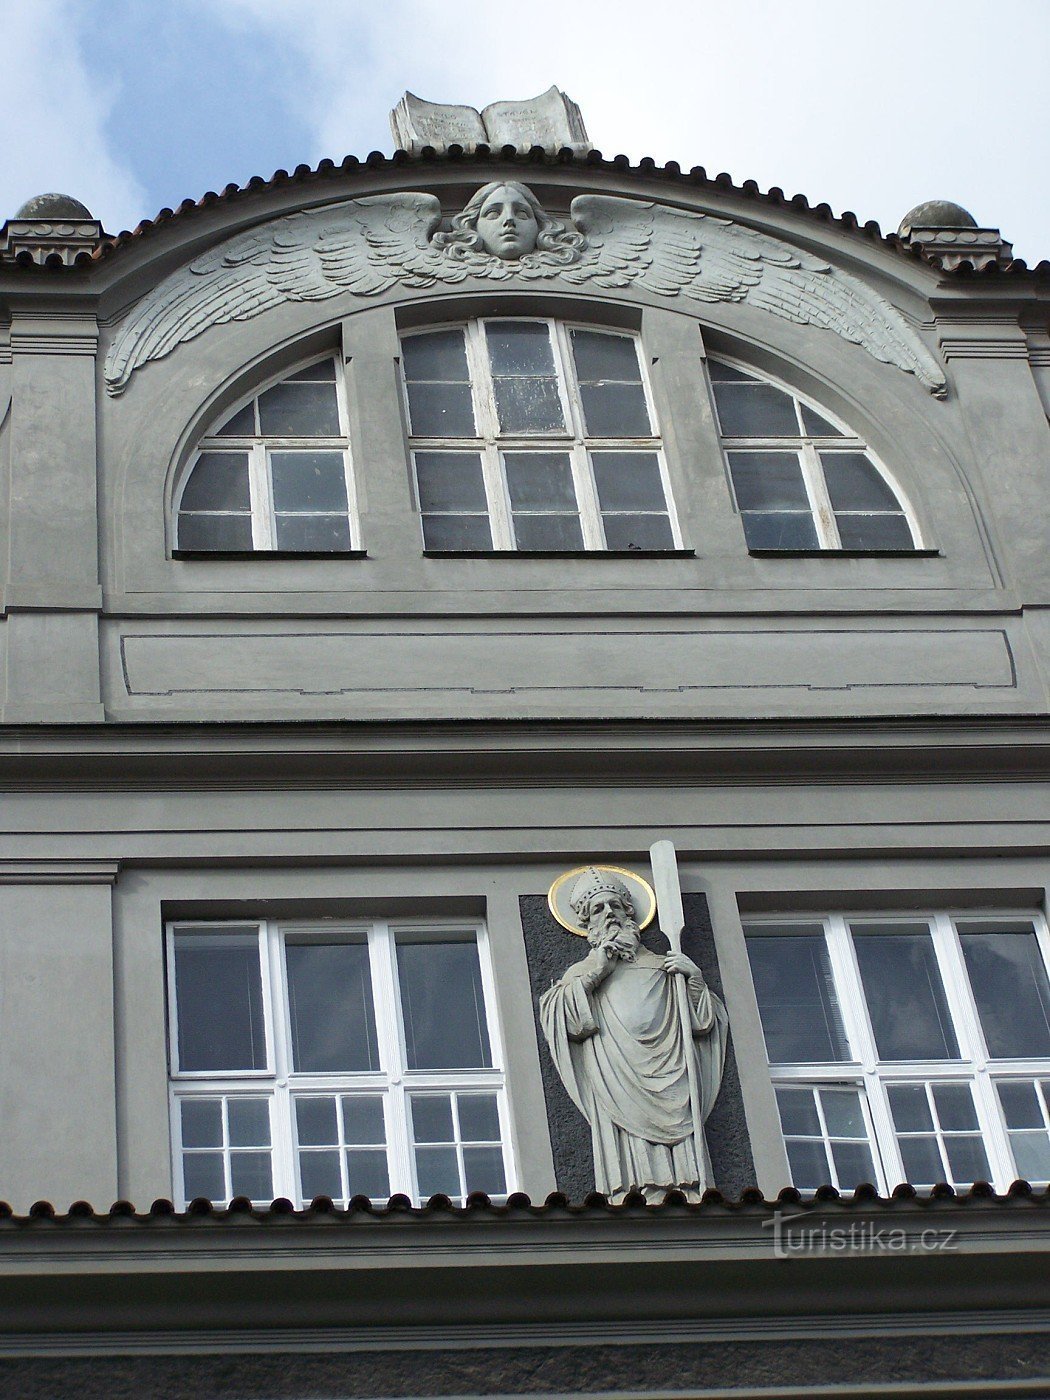 プラハ - Vojtěžská 13 - アールヌーボー様式の校舎